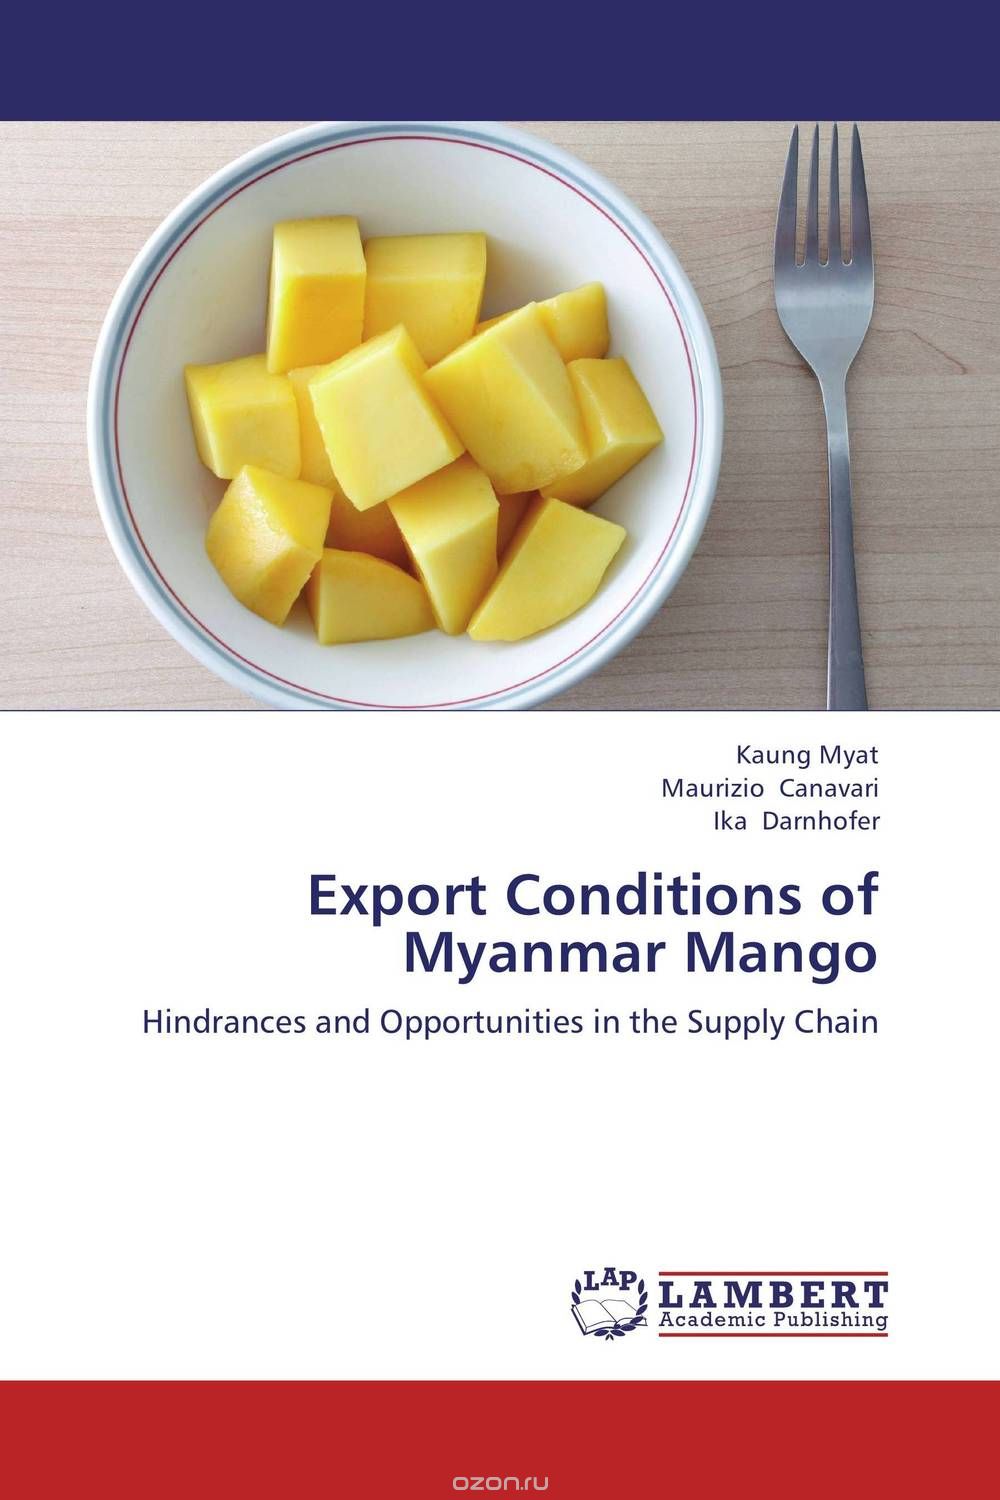 Скачать книгу "Export Conditions of Myanmar Mango"